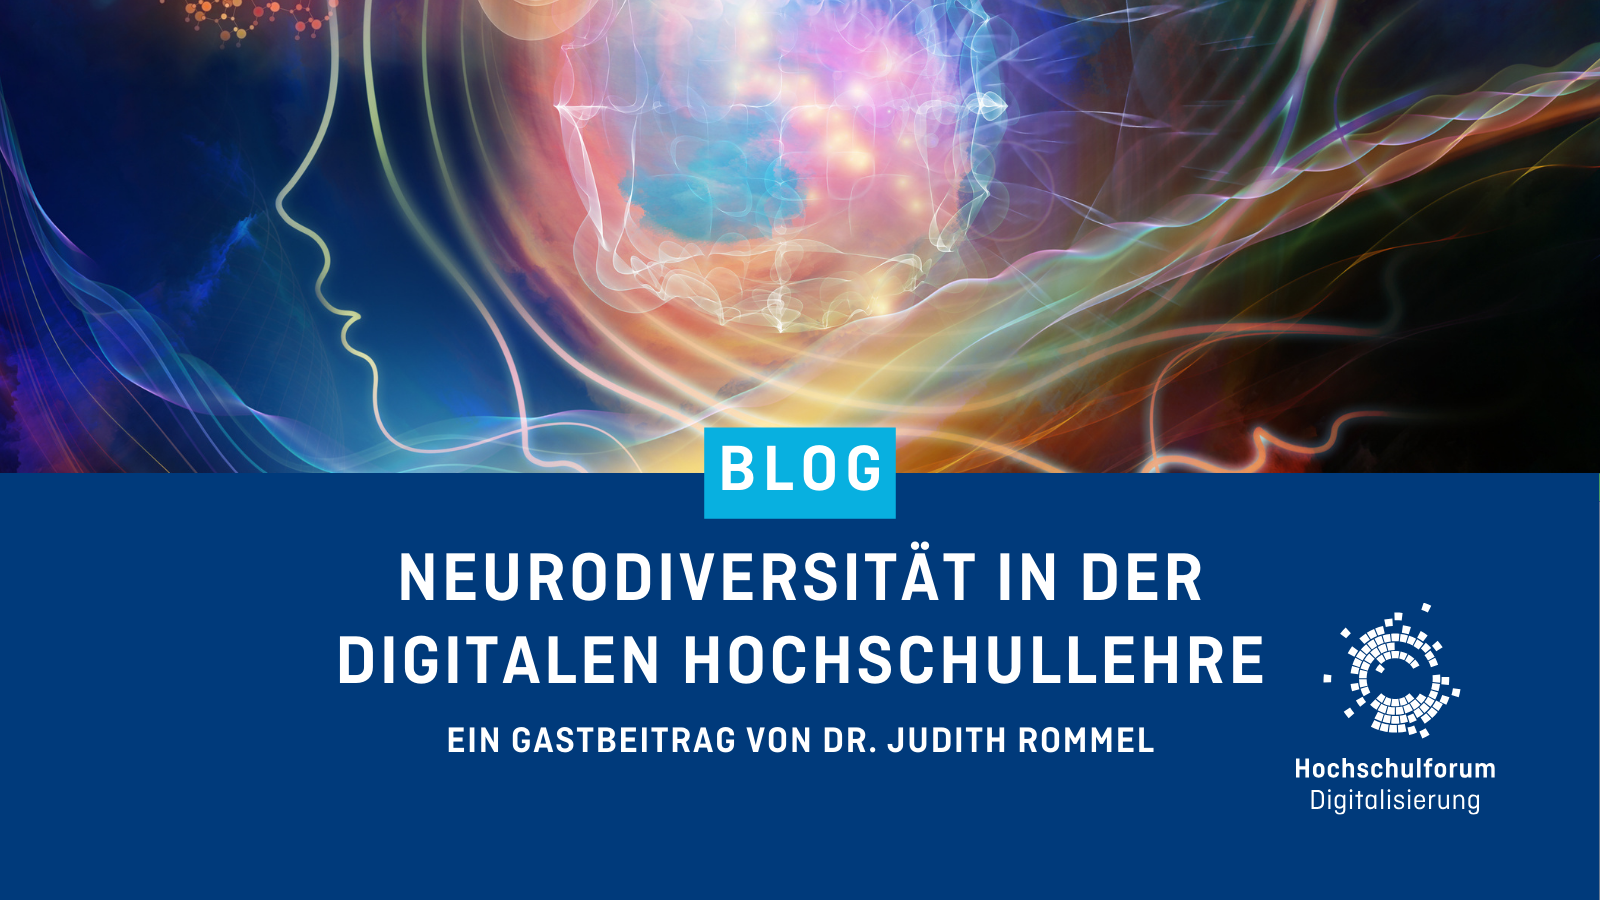 In der oberen Bildhälfte ist eine Grafik zu dekorativen Zwecken abgebildet. Titel des Blogartikels: "Neurodivrrsität in der digitalen Hochschullehre". Untertitel: "Ein Gastbeitrag von Dr. Judith Rommel". Logo rechts unten: Hochschulforum Digitalisierung.